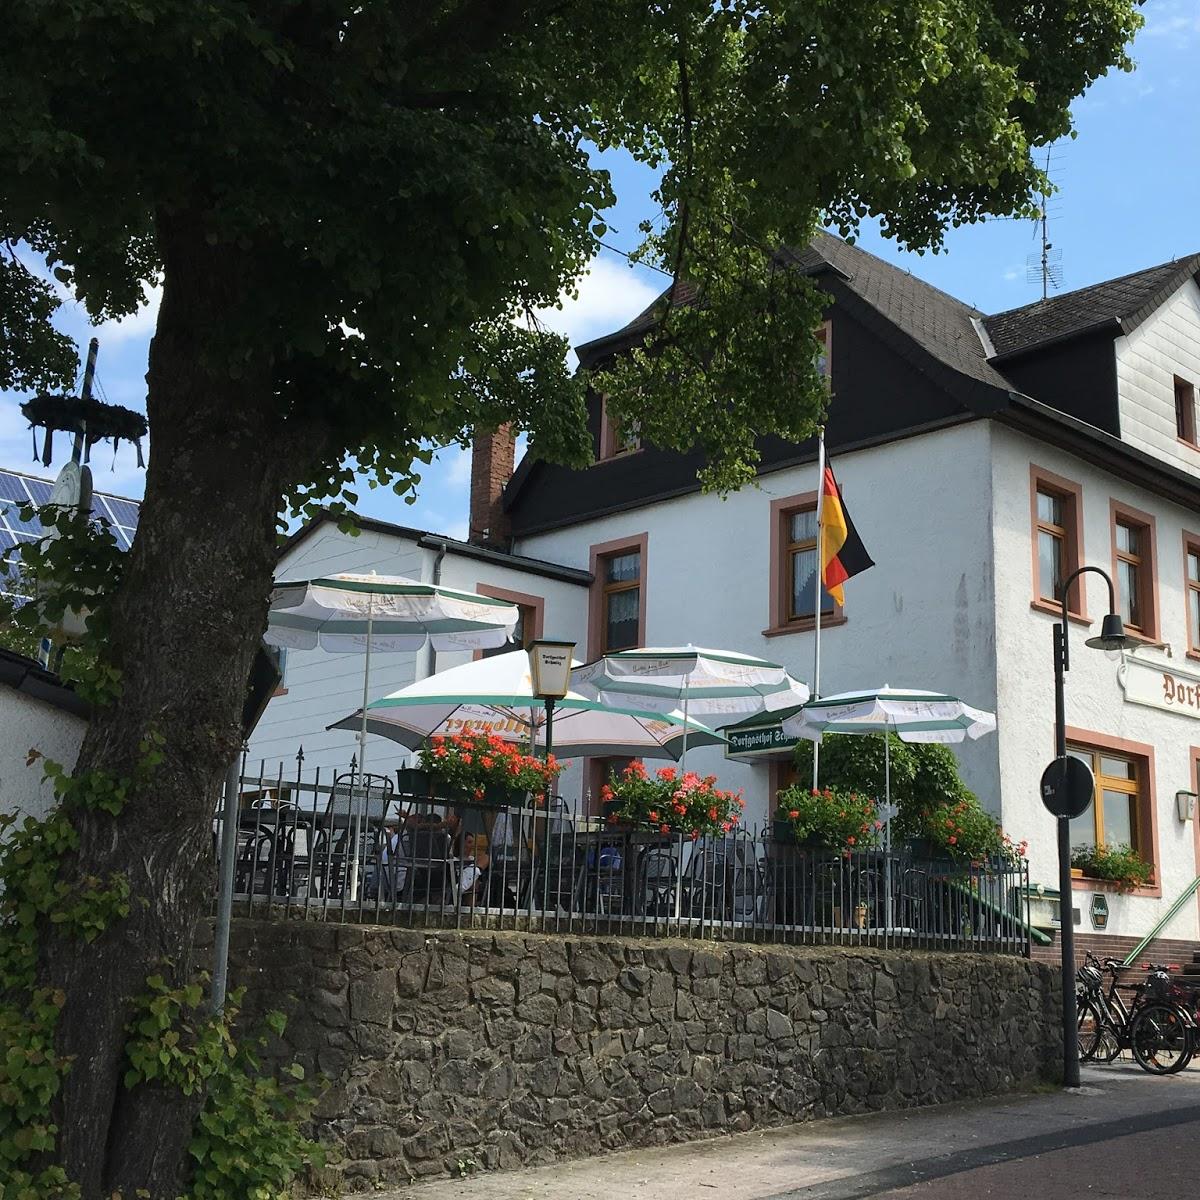 Restaurant "Dorfgasthof Schmitz" in  Schalkenmehren